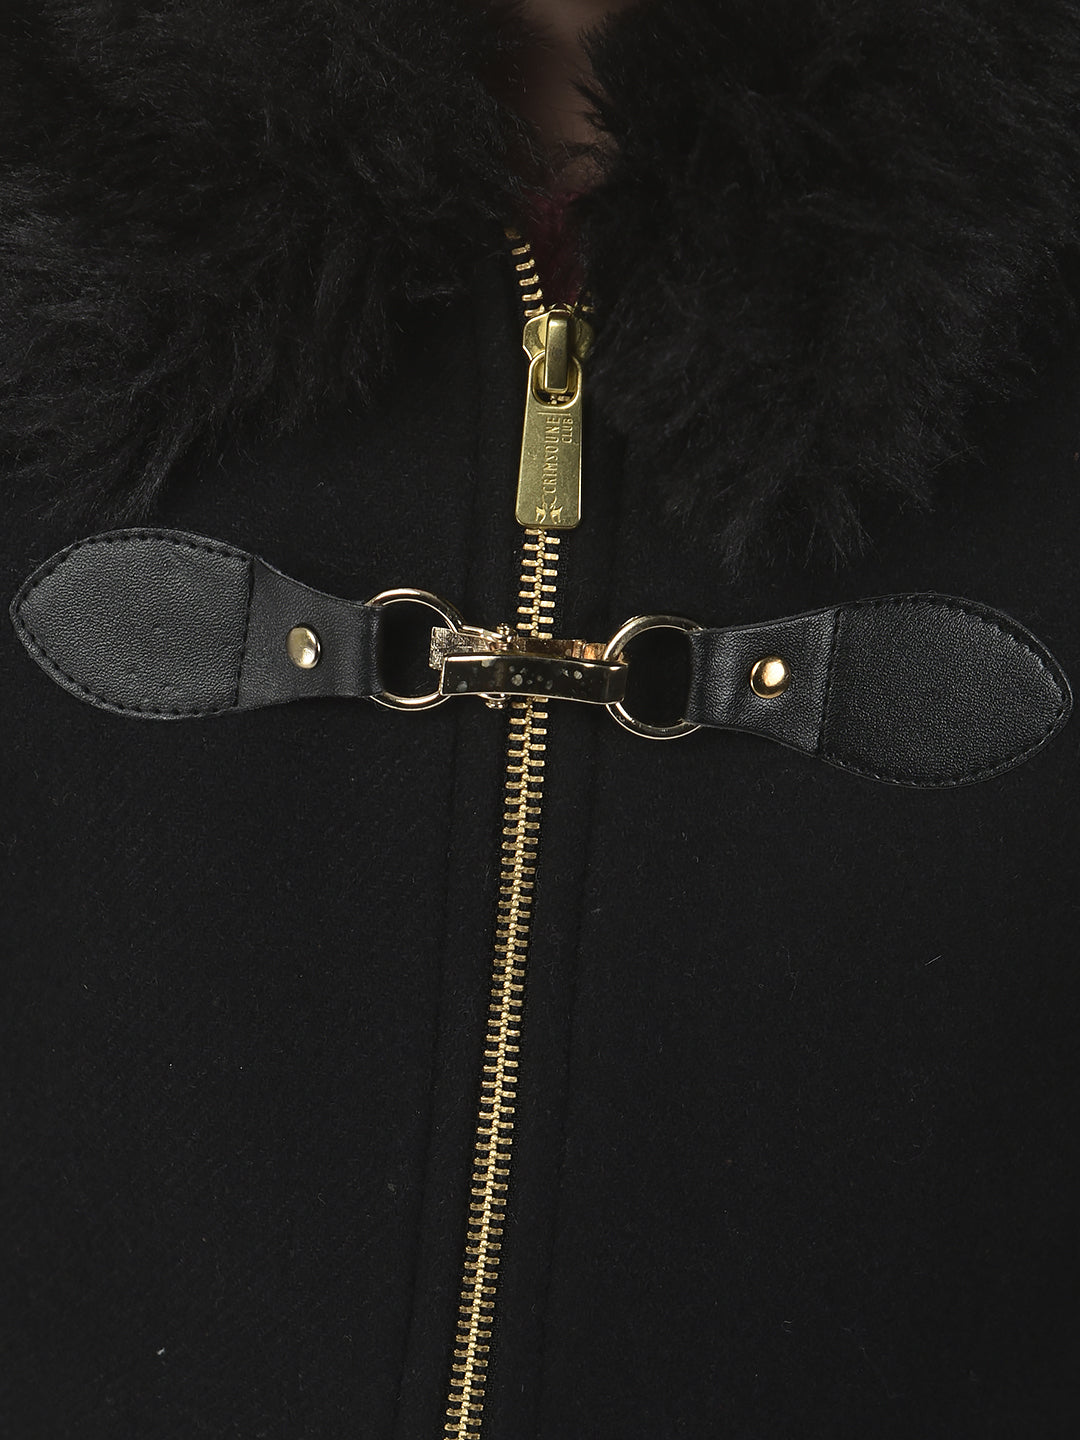 Black Zipper Overcoat